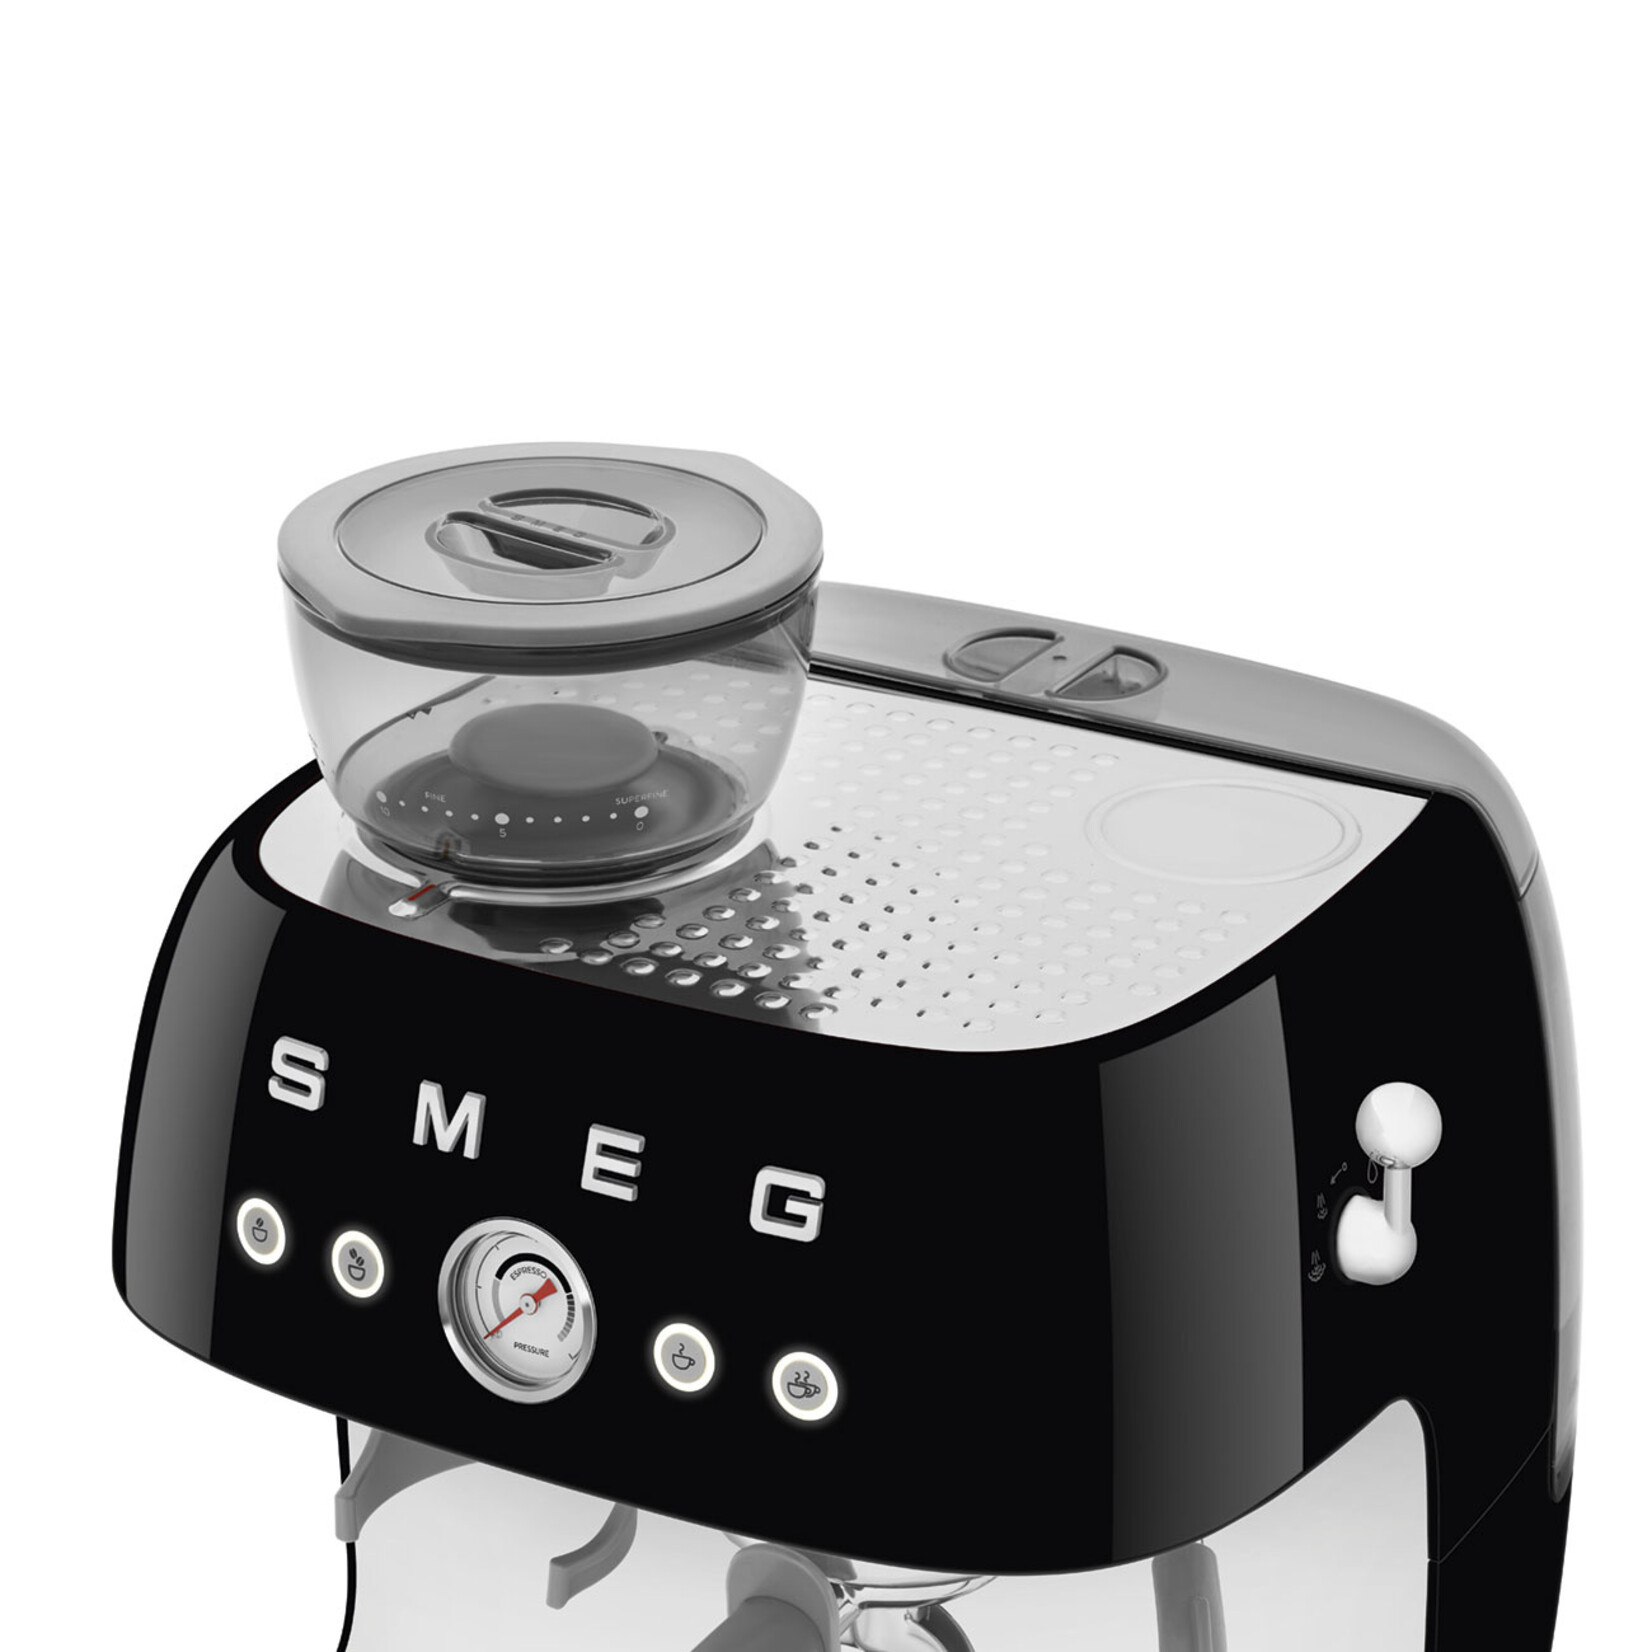 Retro Coffee Makers Home Coffee Machine Small Semi-automatic